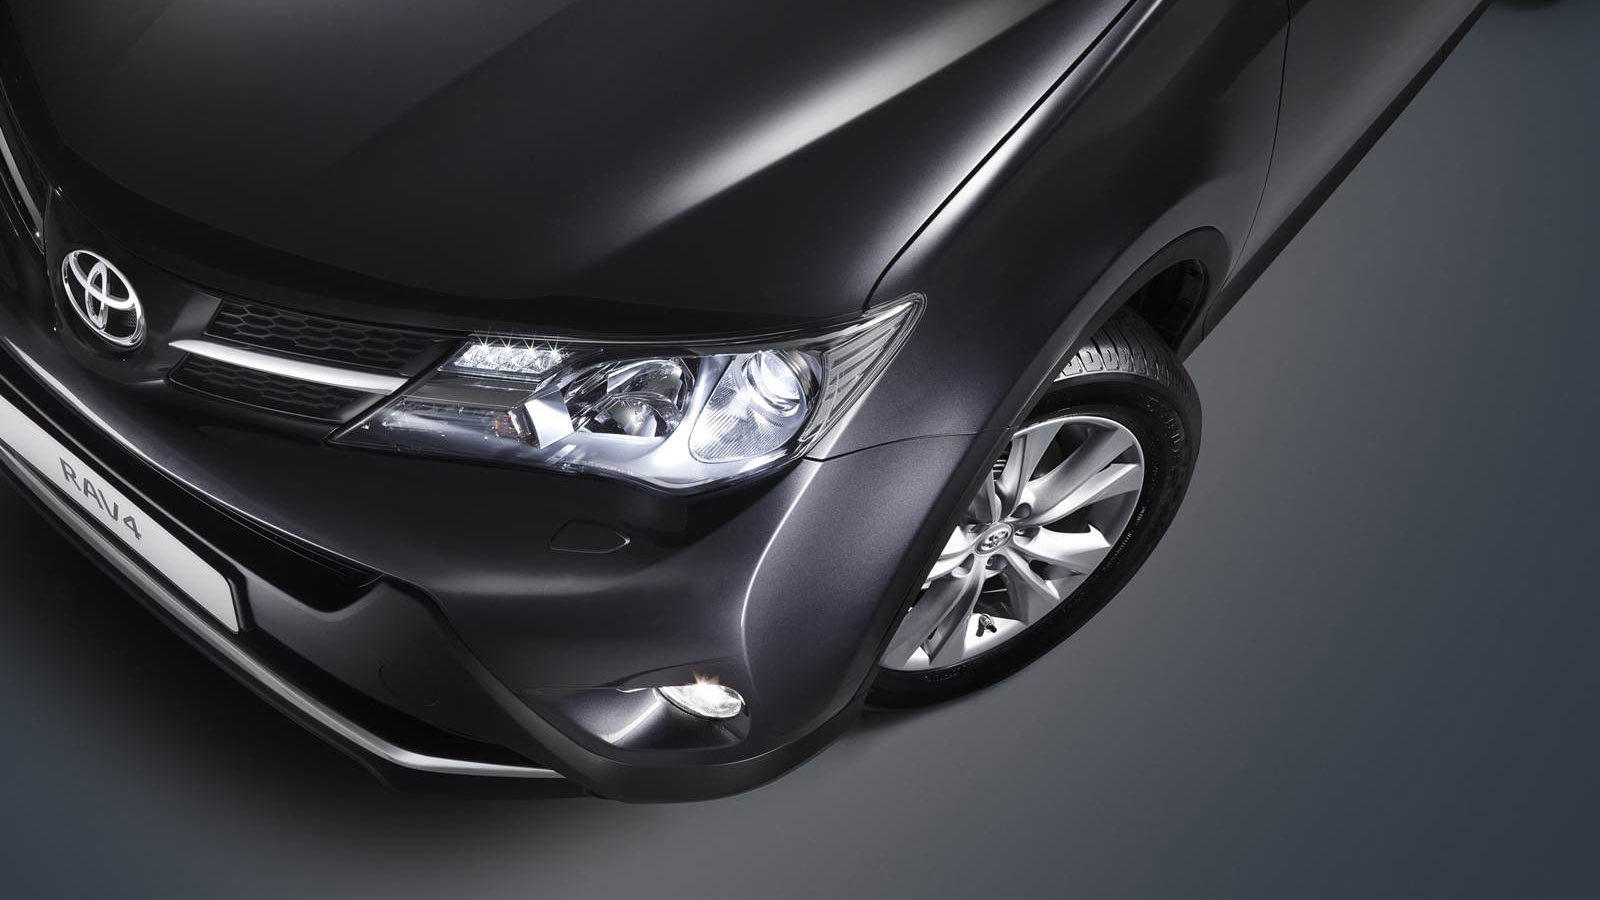 Doble llave - Toyota lanza nueva generación del todocaminos RAV4